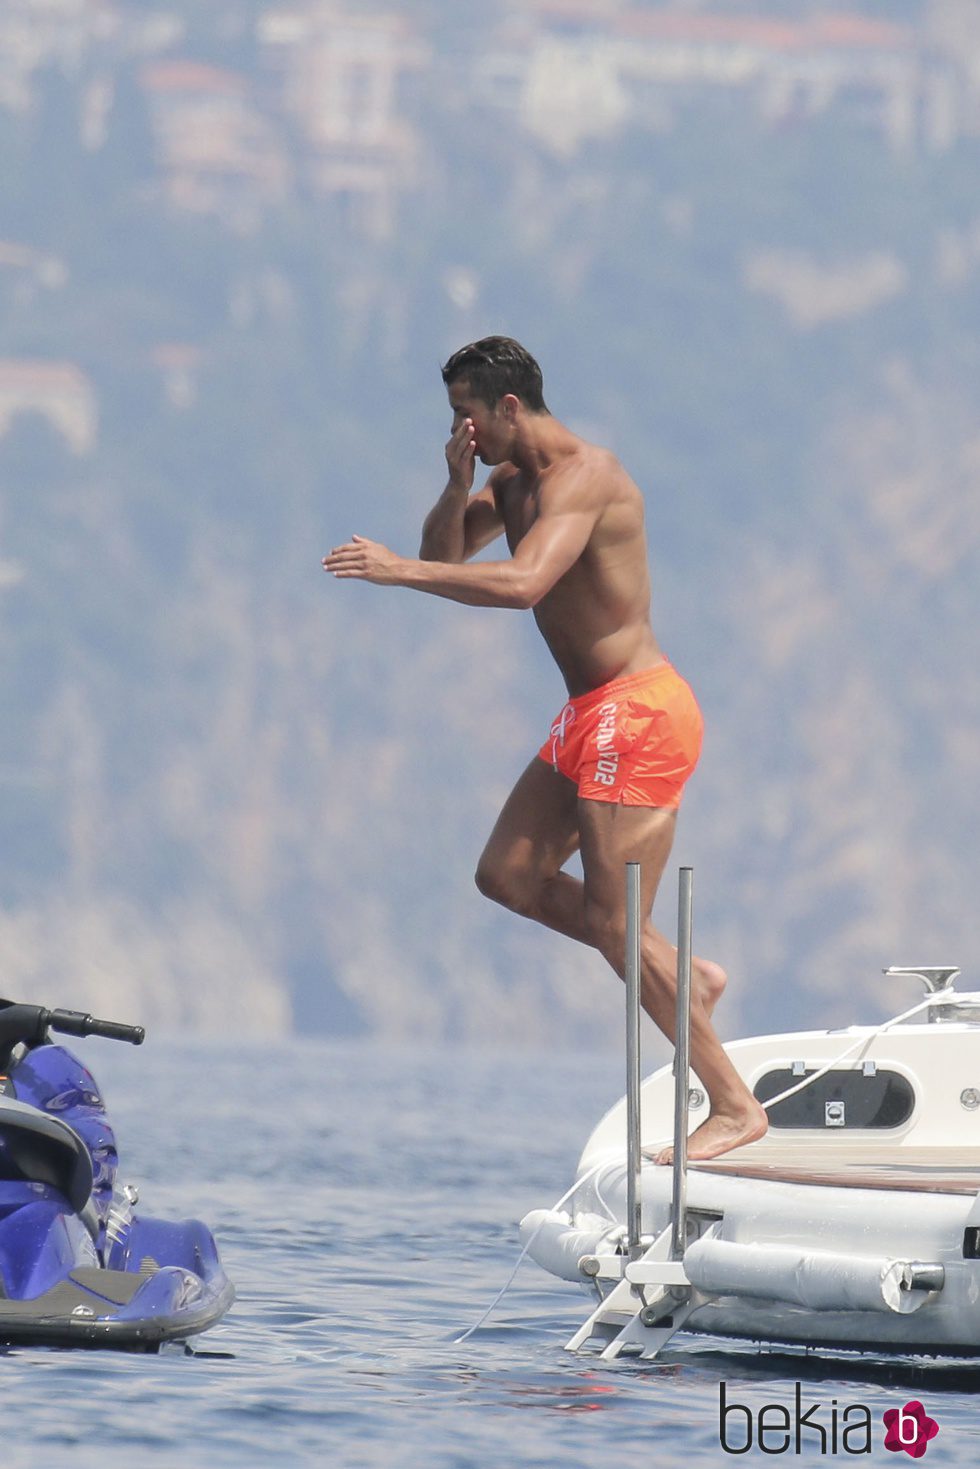 Cristiano Ronaldo se tira al mar durante sus vacaciones en Saint-Tropez